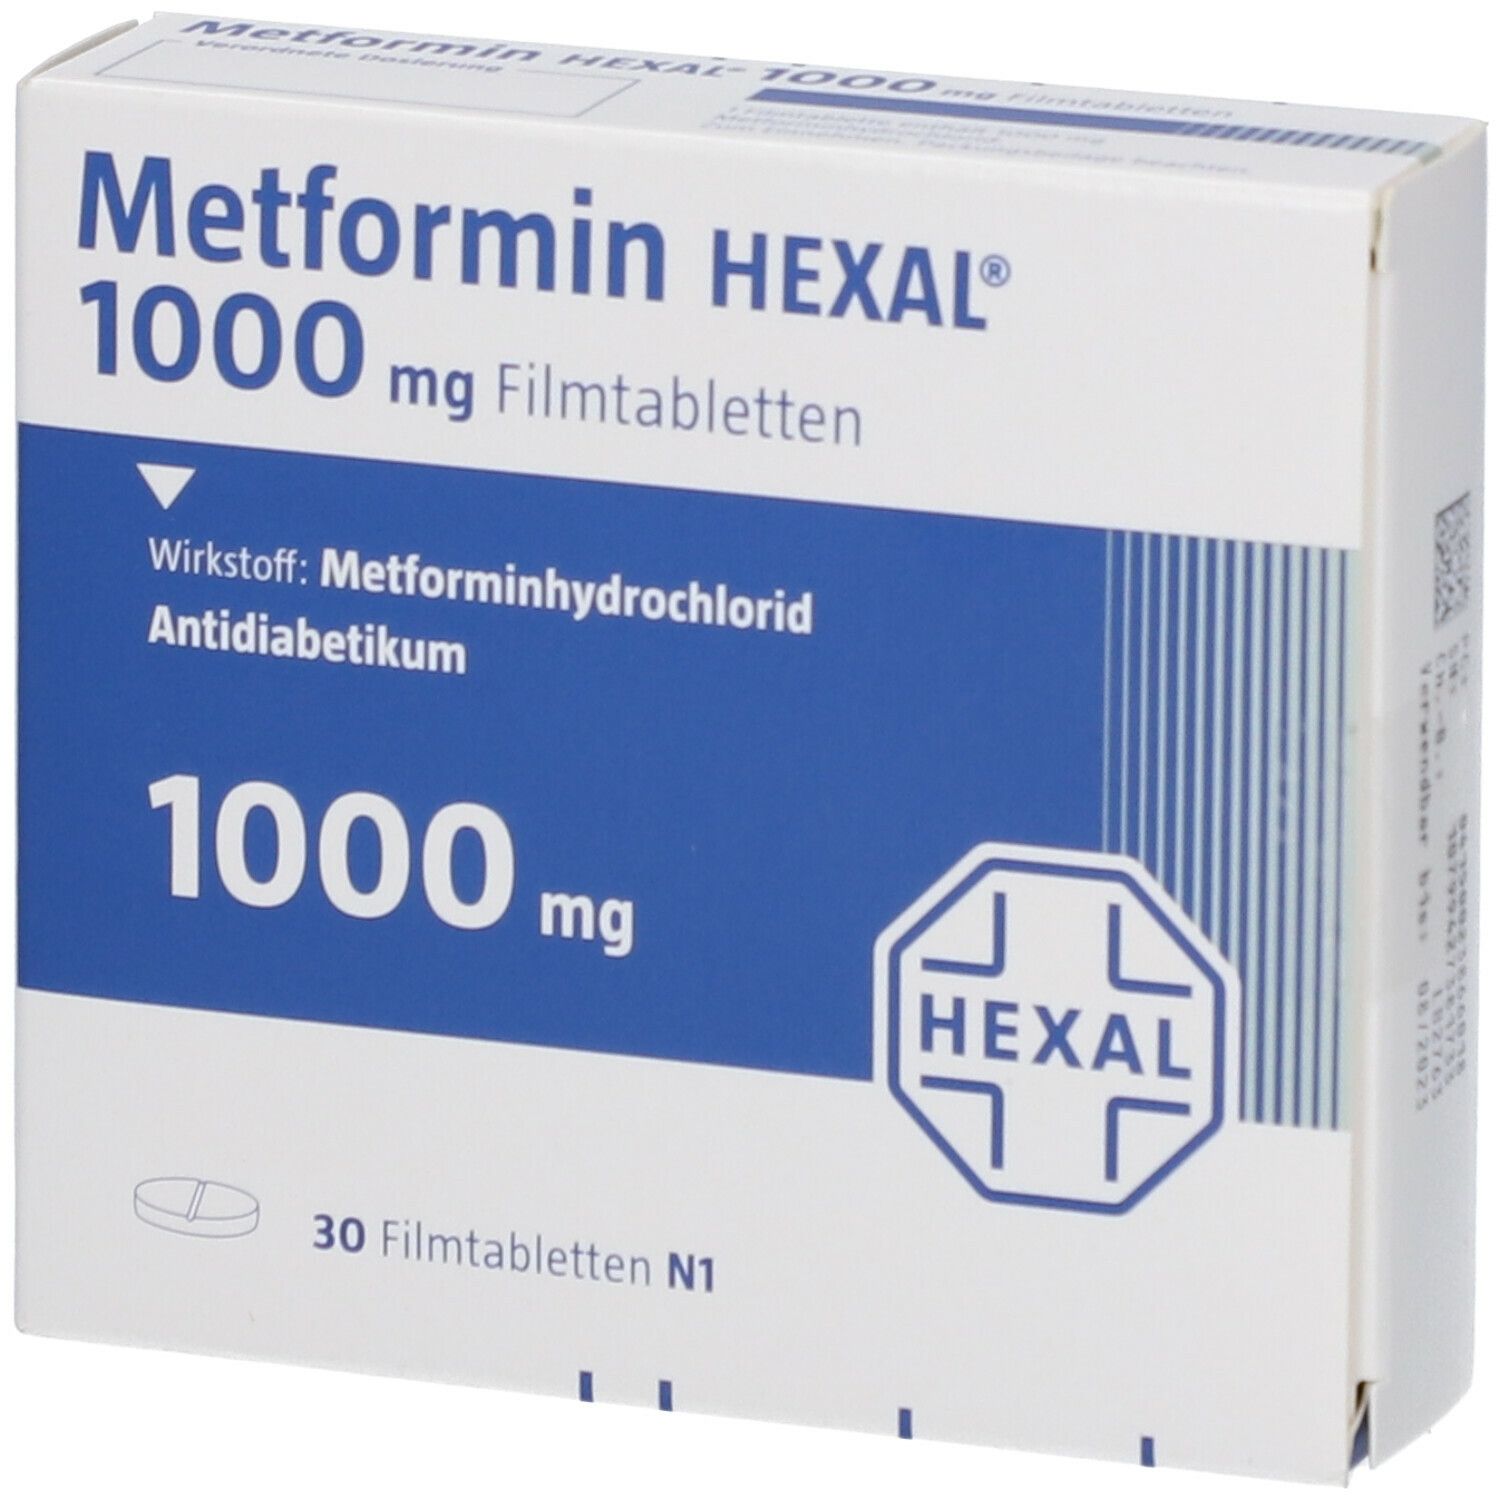 Metformin HEXAL® 1000 mg